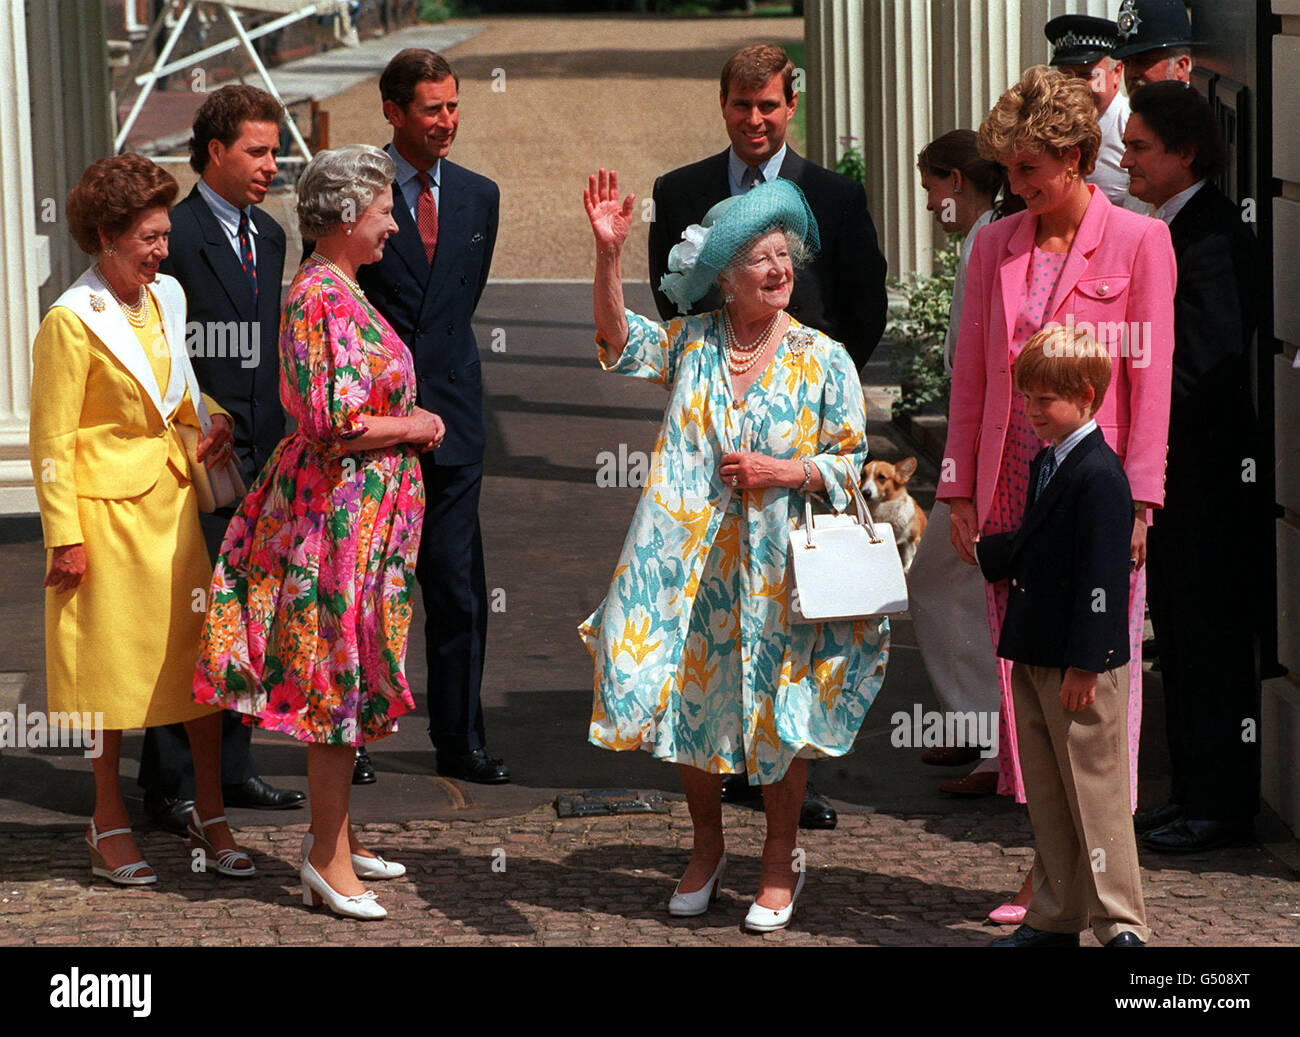 La reine mère, qui célèbre son 92e anniversaire, se fait une vague vers les adeptes de la rue à l'extérieur de Clarence House, entourée de sa famille. De gauche à droite : la princesse Margaret, Lord Linley, la reine, le prince de Galles, le duc d'York, la princesse de Galles et le prince Harry. Banque D'Images